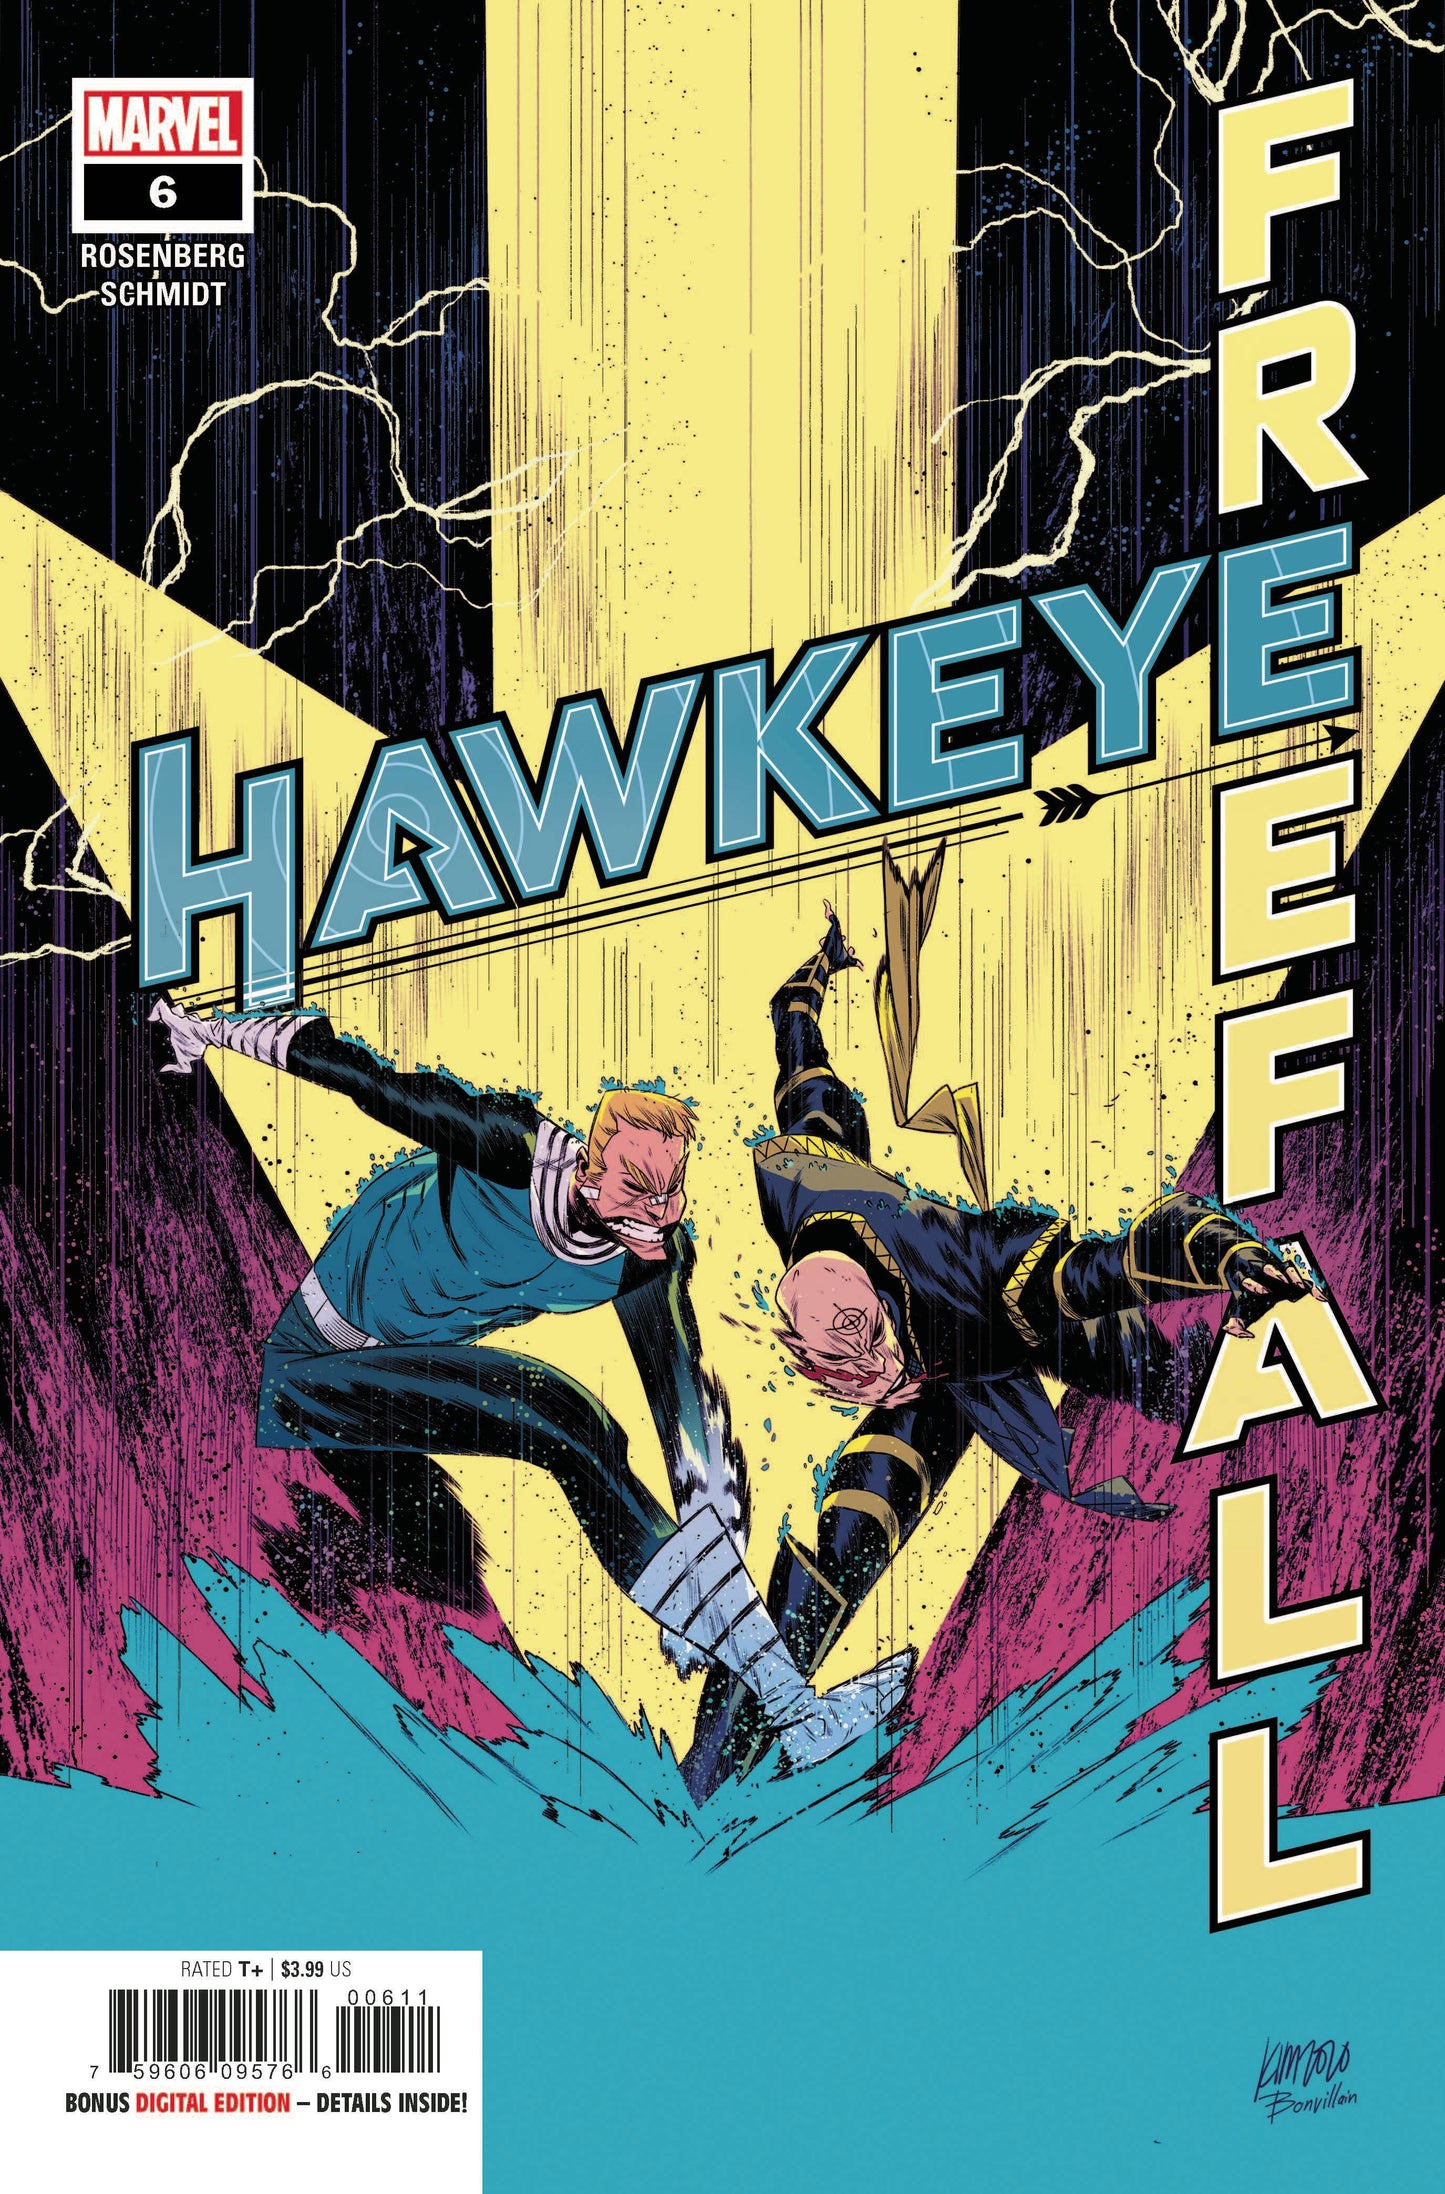 Hawkeye Free Fall #6